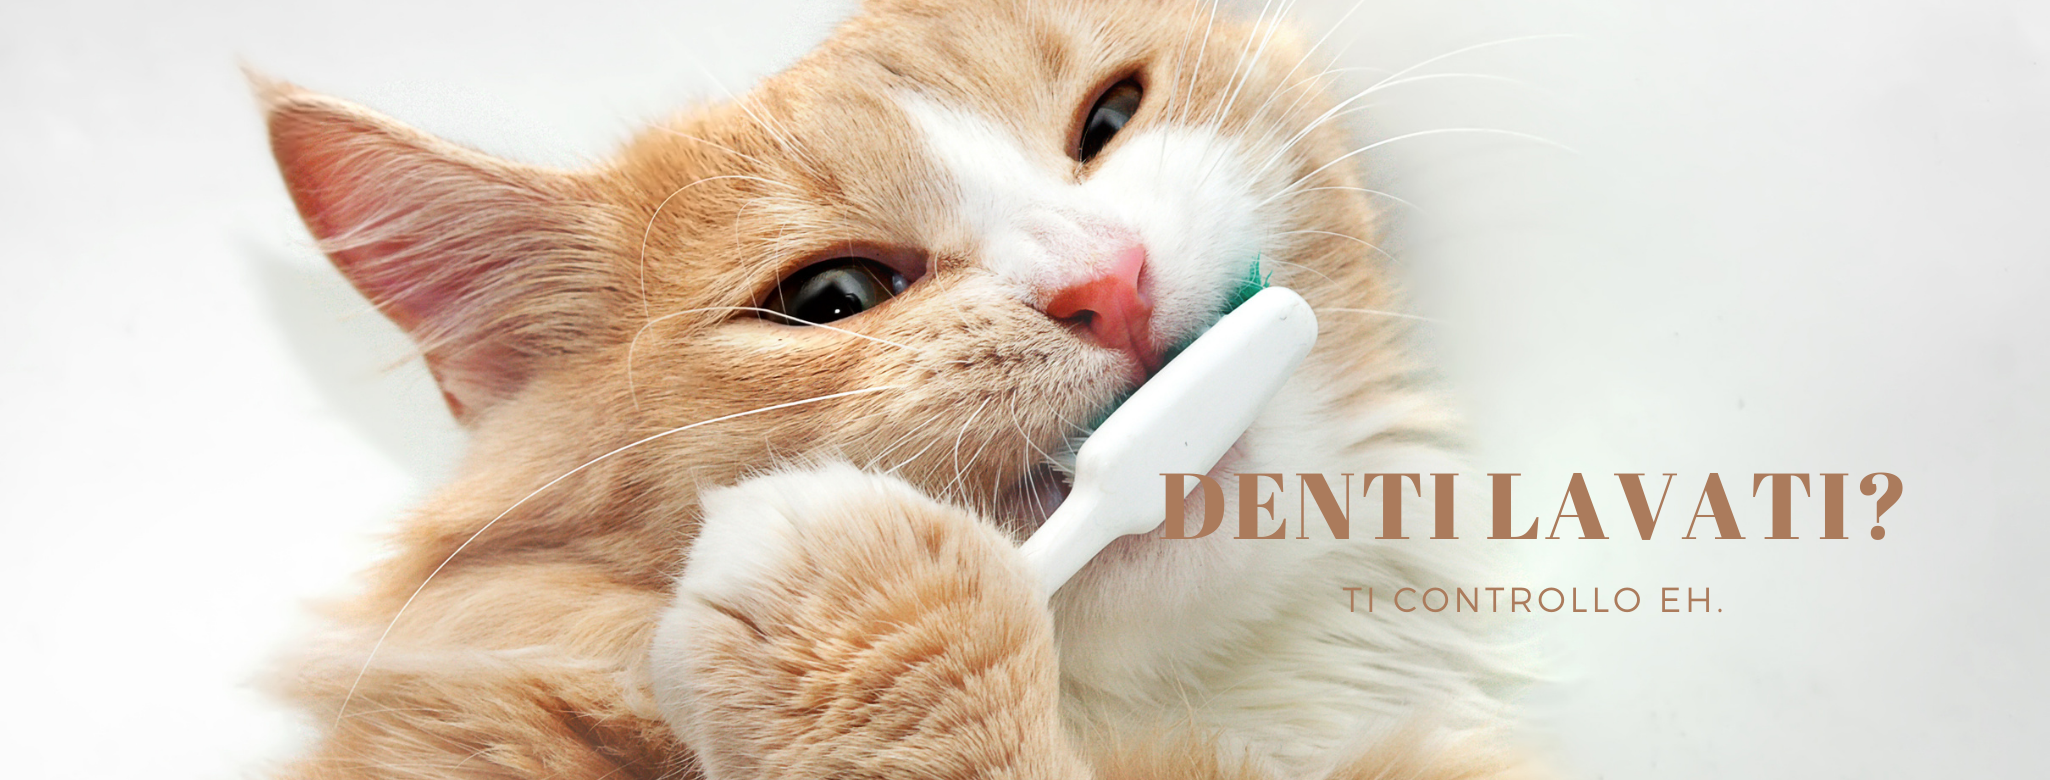 Foto di gatto tigrato rosso e bianco con uno spazzolino da denti in bocca, con scritta che dice: "Denti lavati? Ti controllo eh."